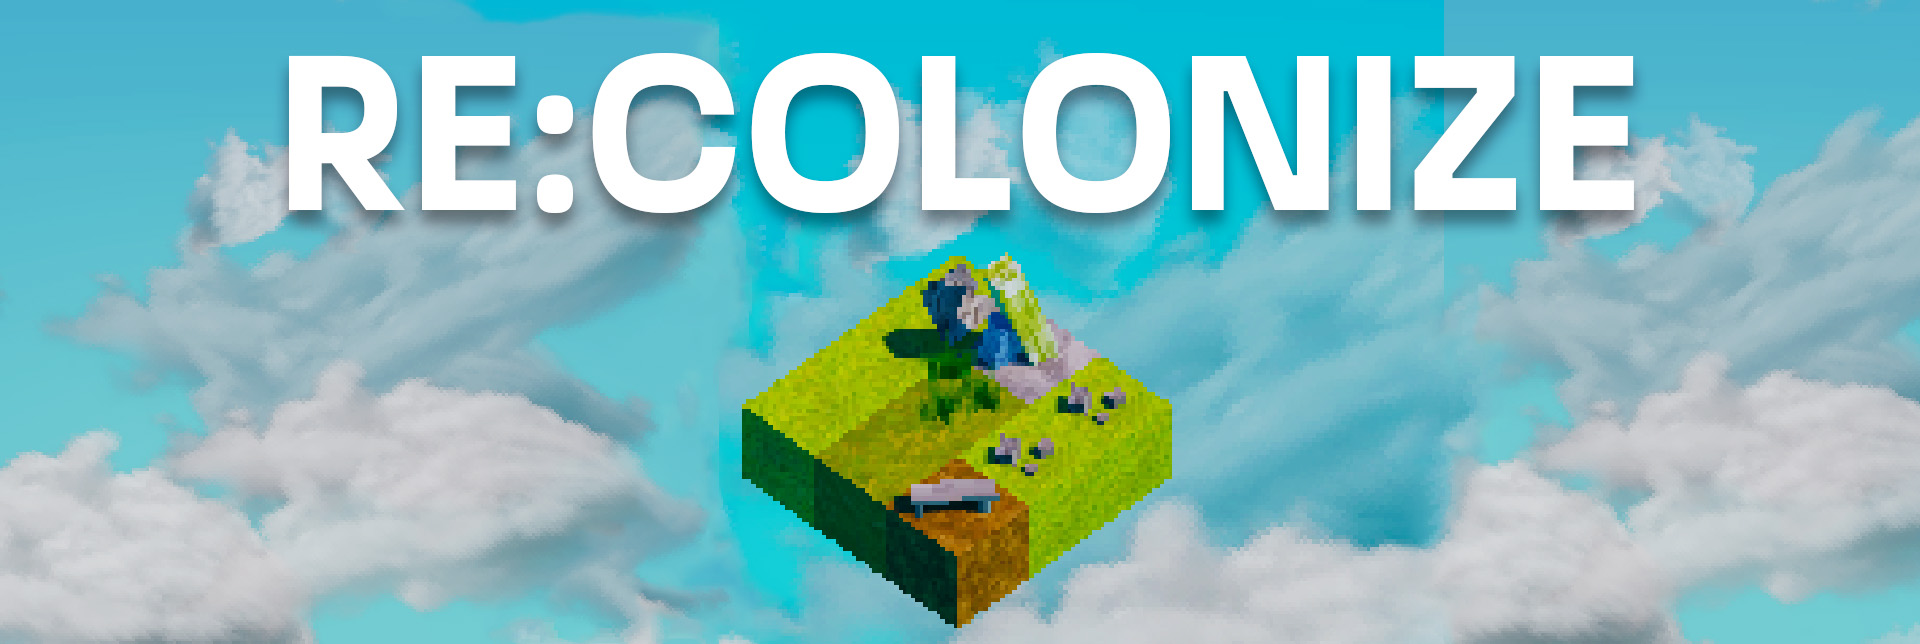 re:colonize